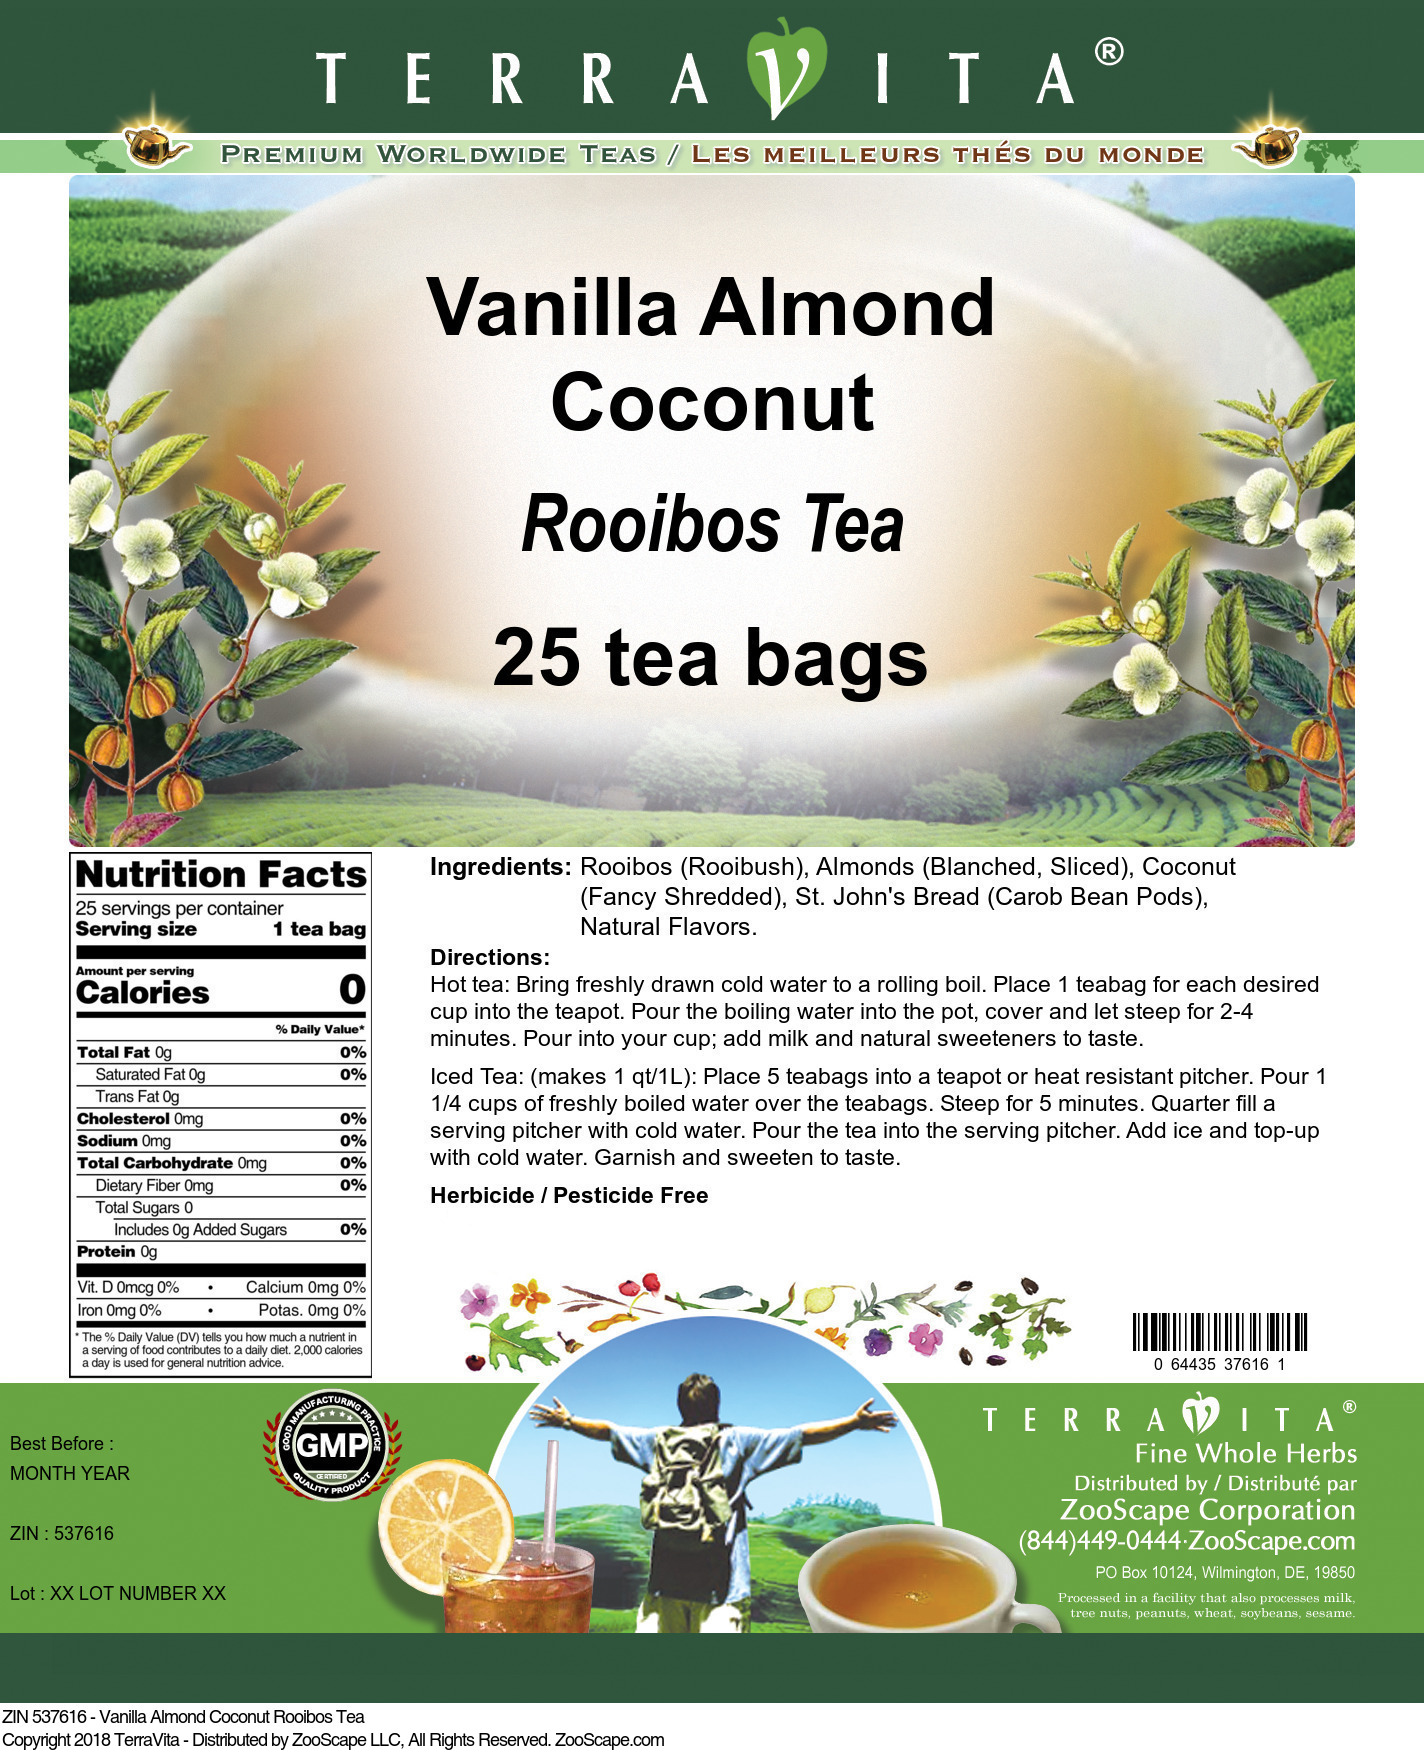 Vanilla Almond Coconut Rooibos Tea - Label